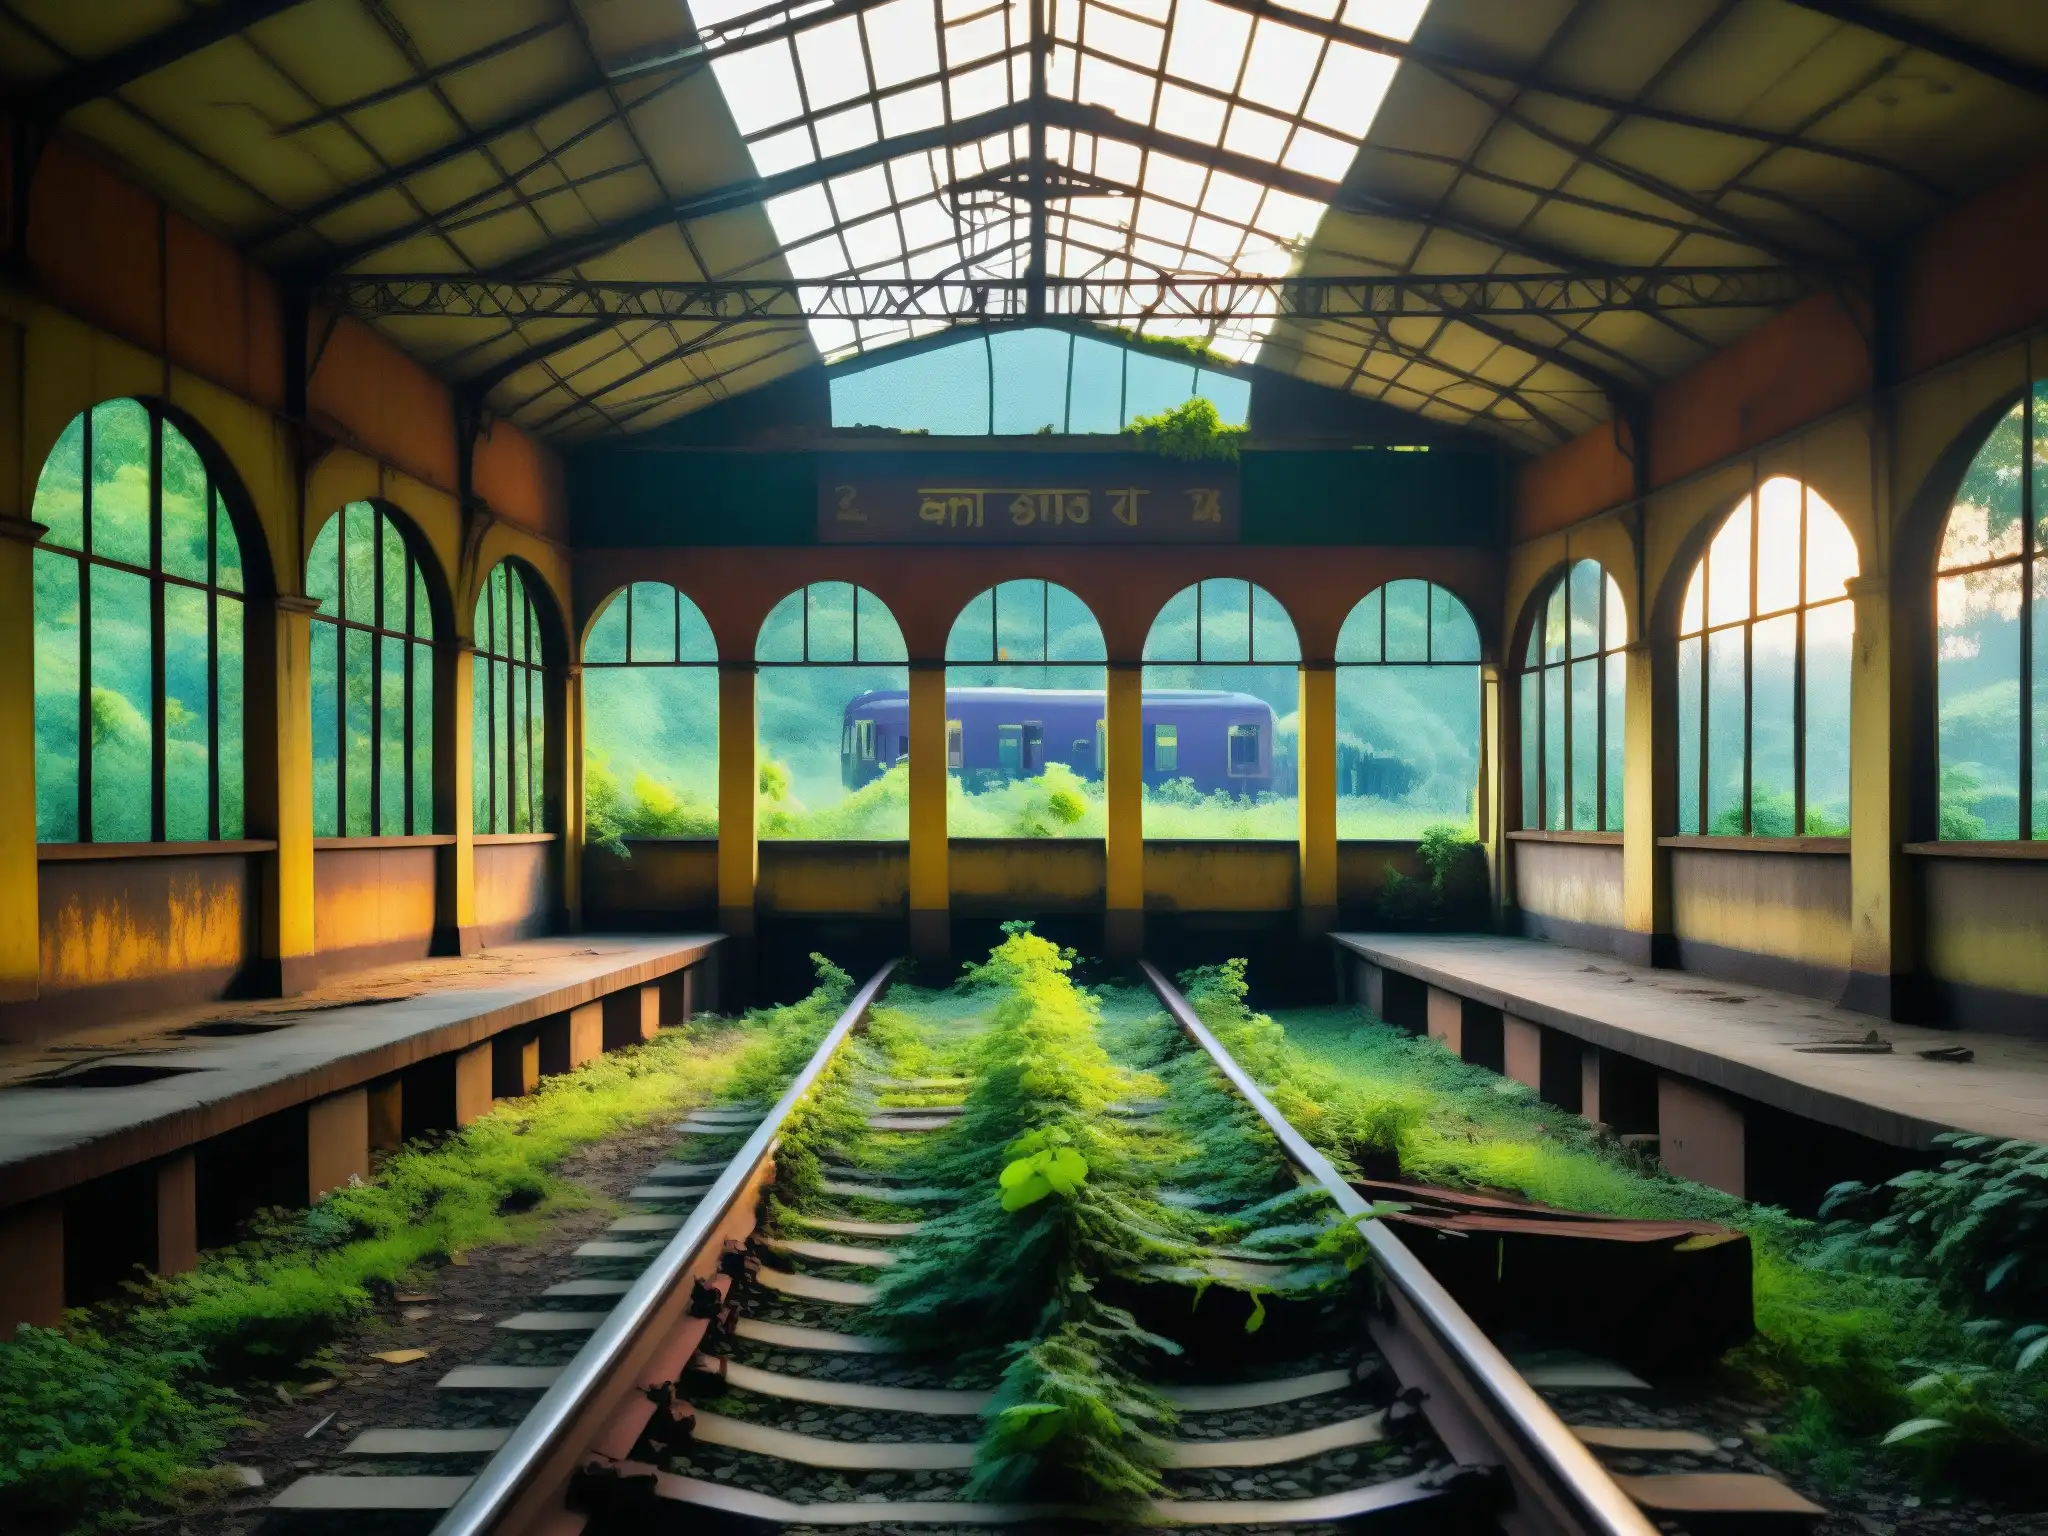 Un evocador tren fantasma de Bengal: estación abandonada, naturaleza invadiendo, vías oxidadas, atmósfera misteriosa